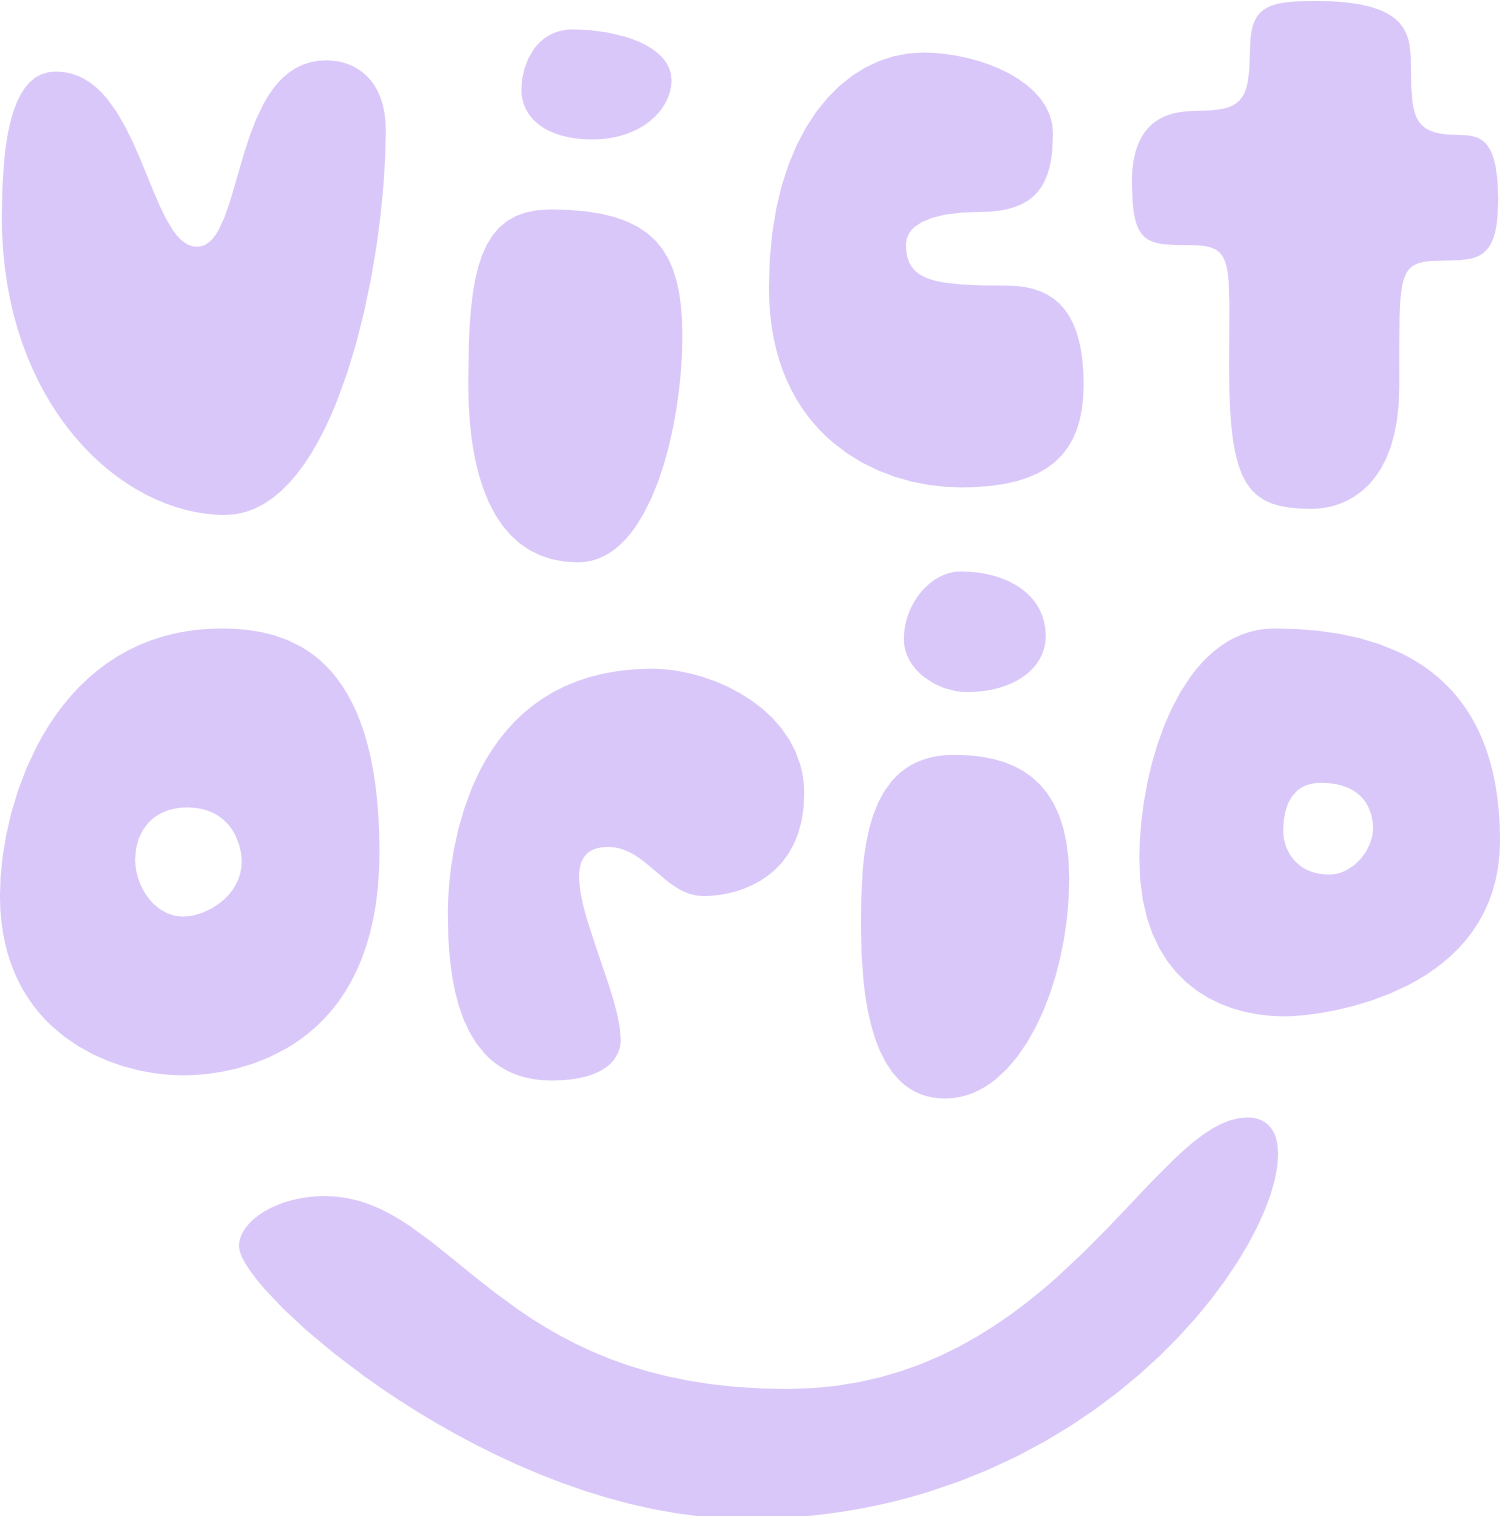 victorio